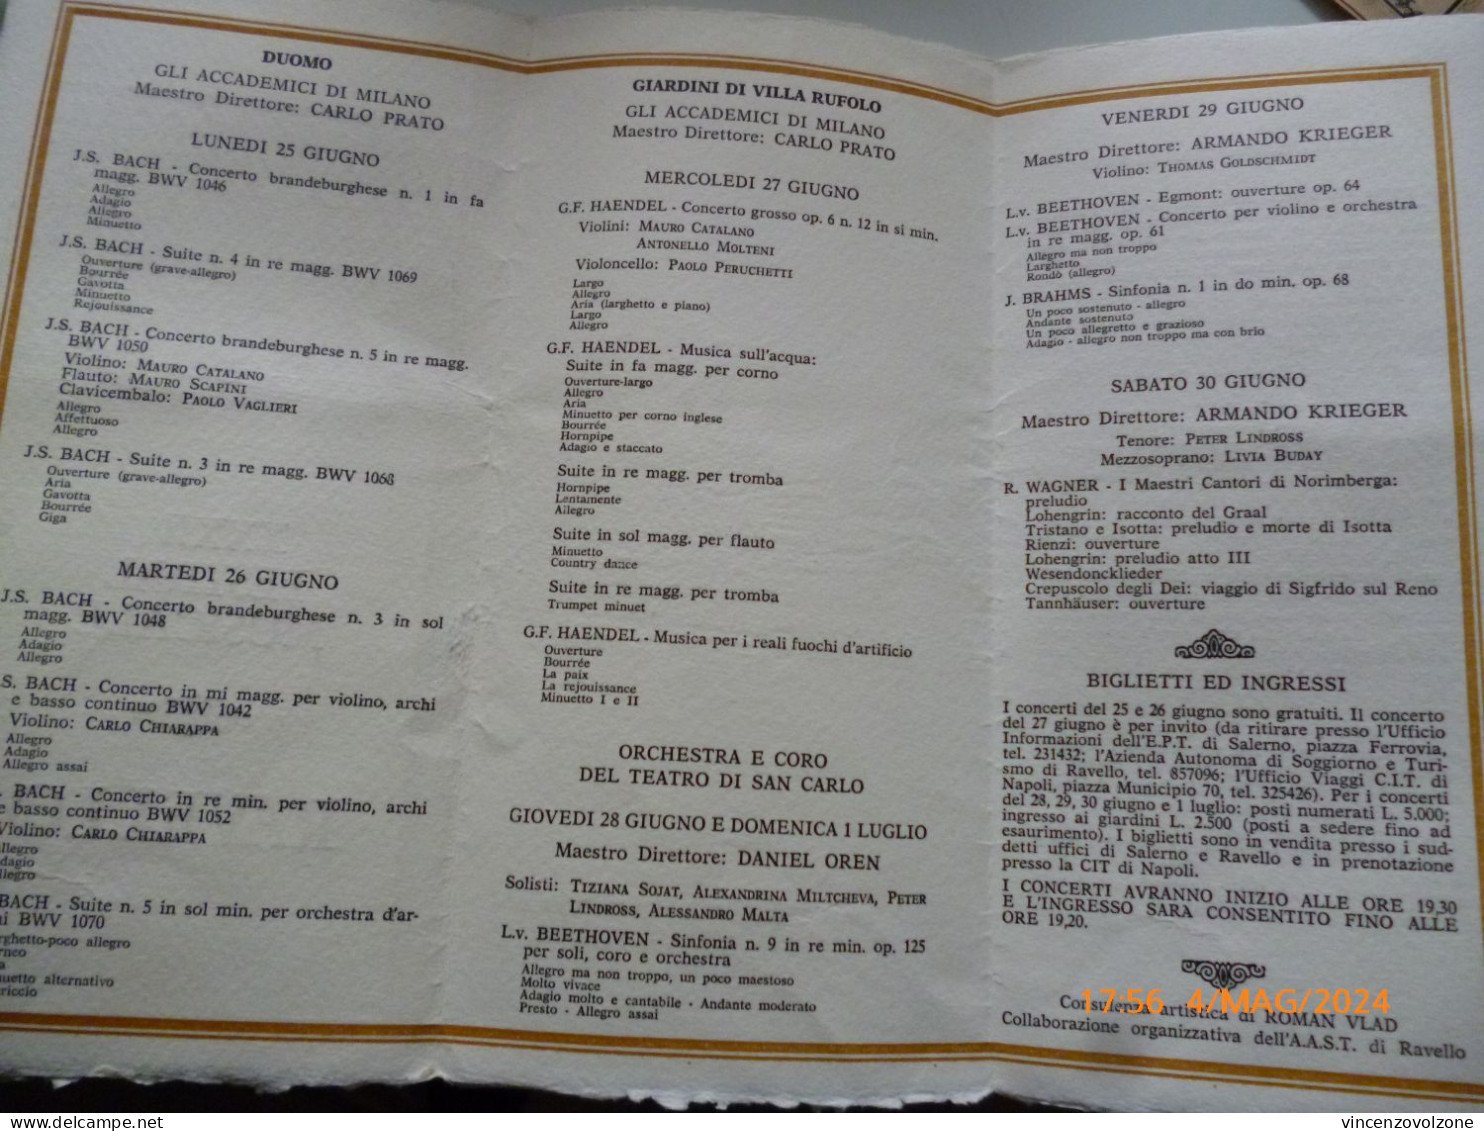 Programma "XXXII FESTIVAL MUSICALE RAVELLO 1984" - Programma's